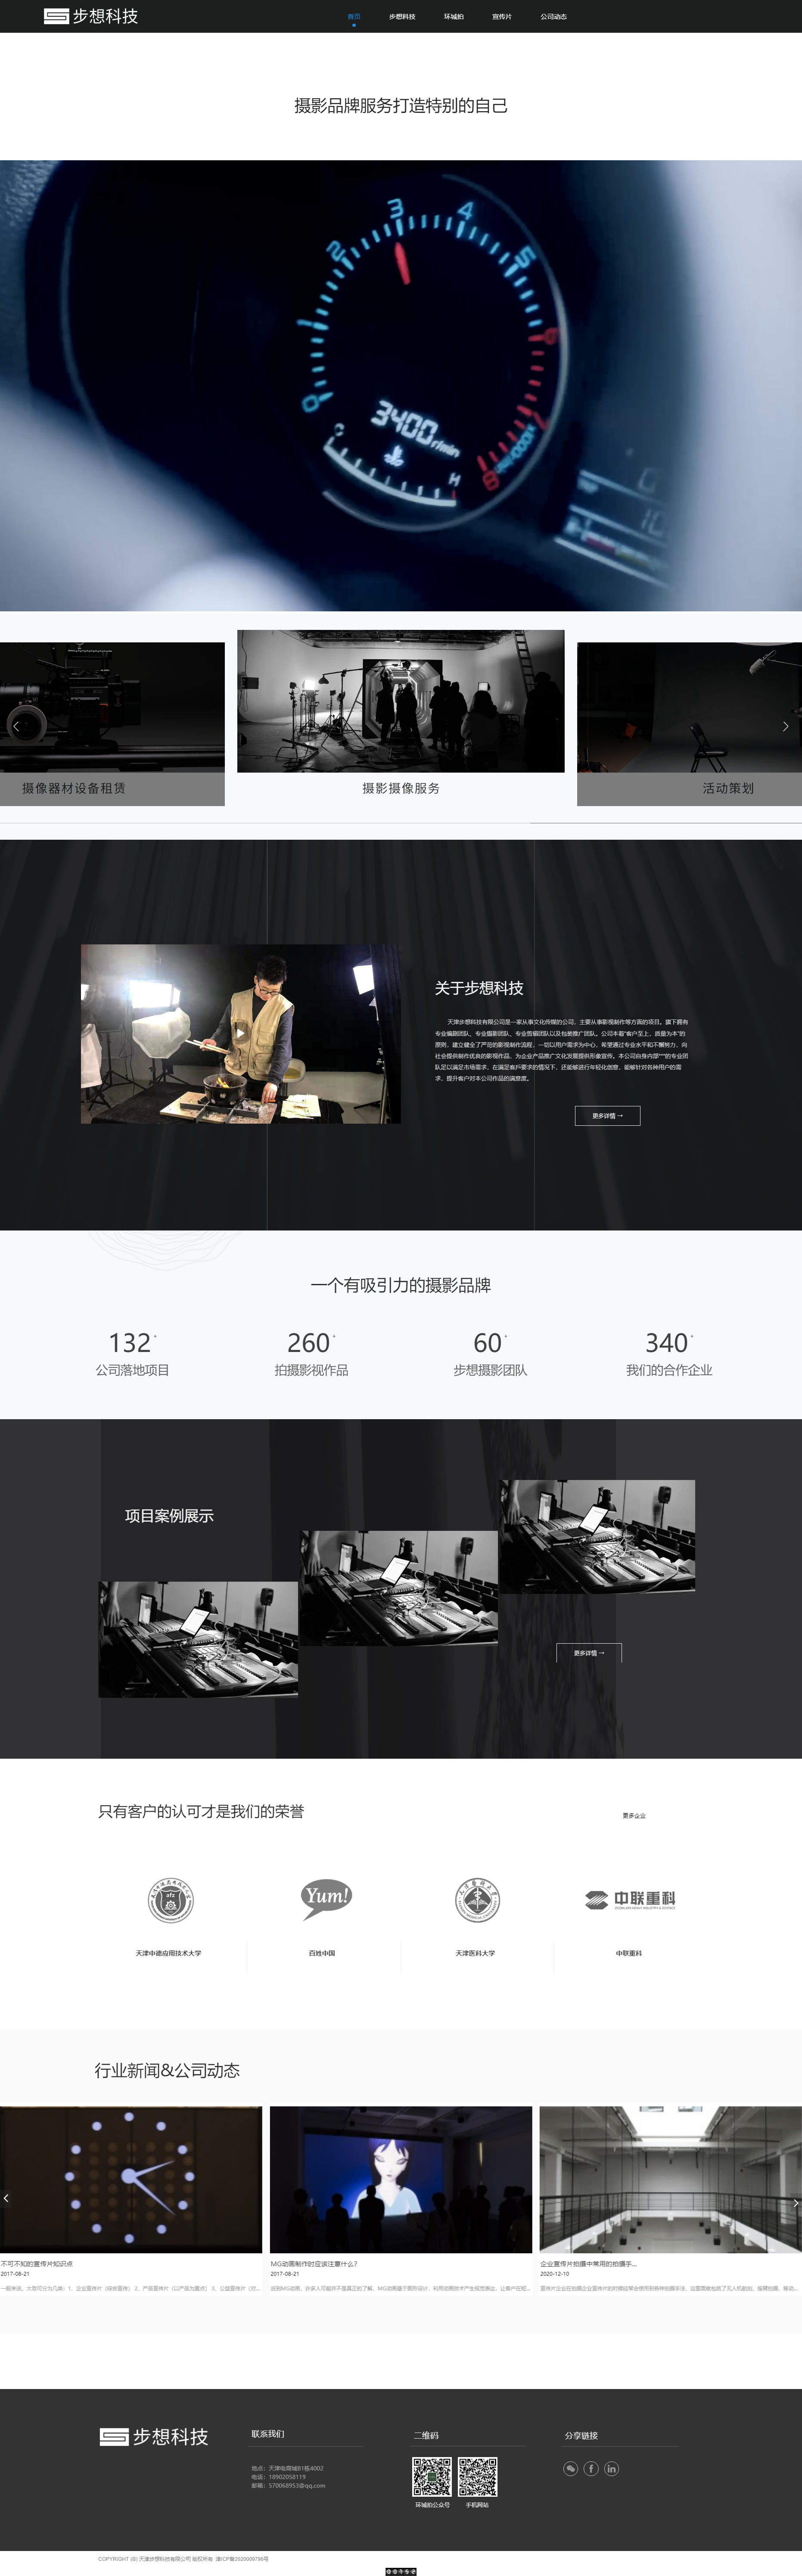 Tianjin Buxiang Technology Co., Ltd.